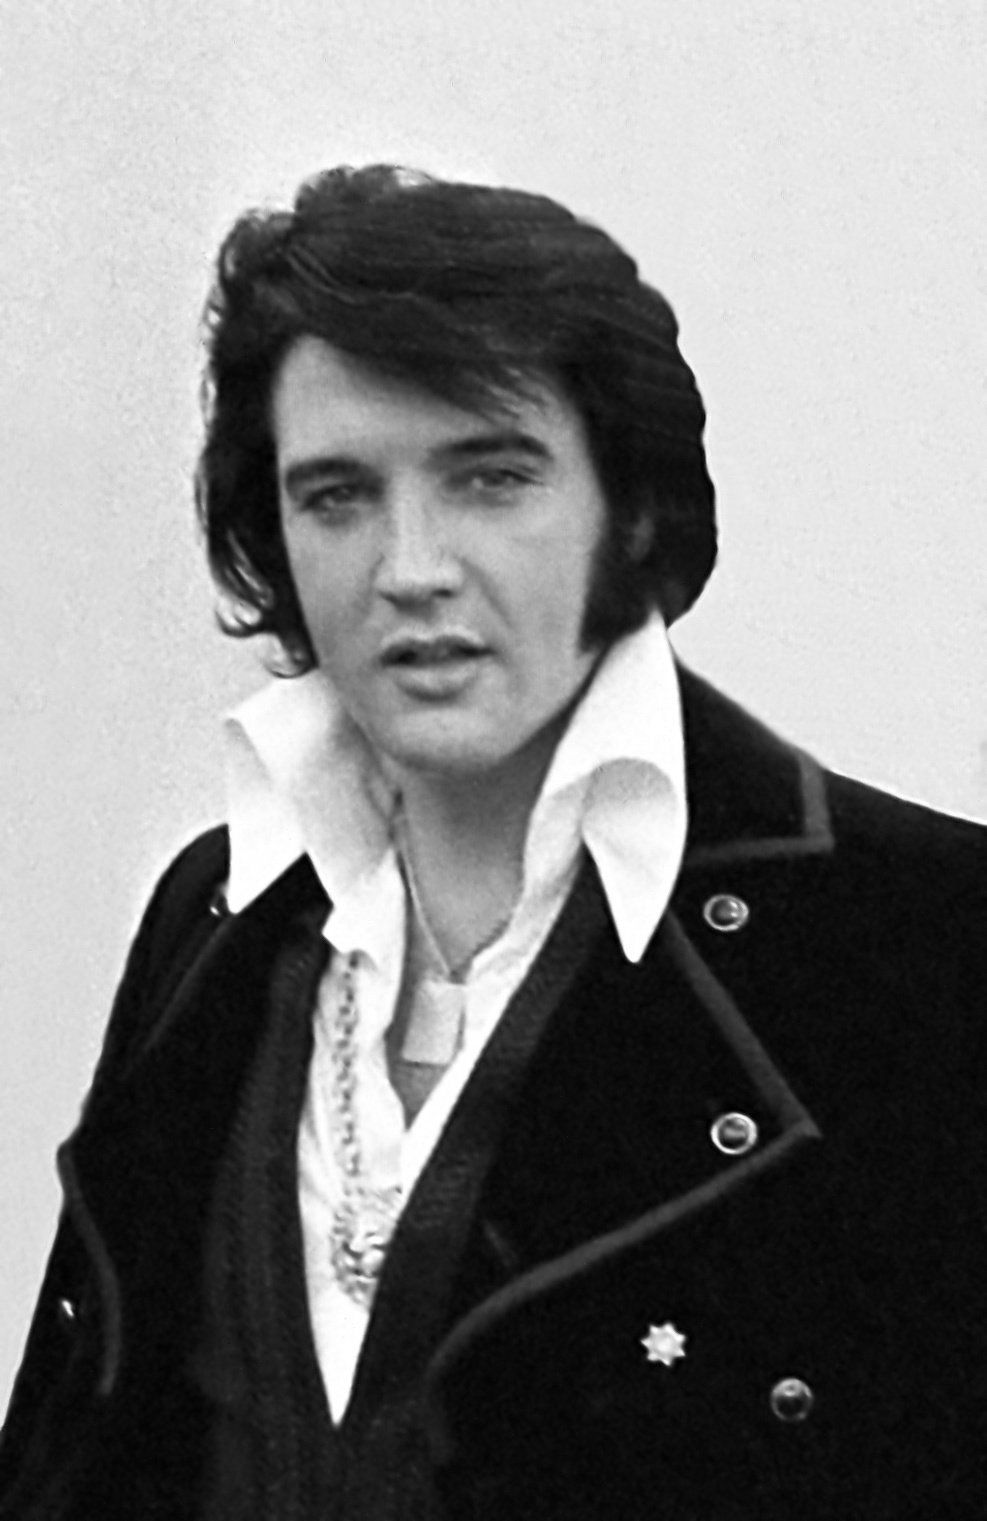 Video Elvisistä, joka laulaa ”Aina mielessäni” yhdistettynä harvinaisiin Presleyn perhemateriaaleihin